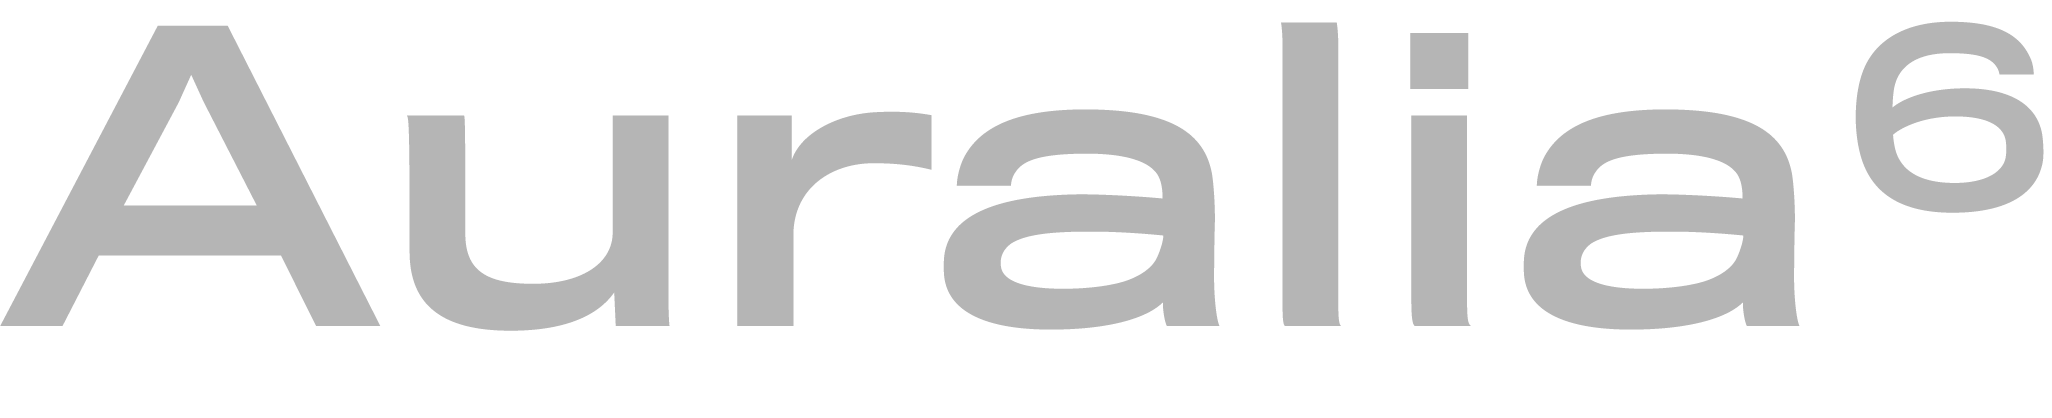 Auralia logo